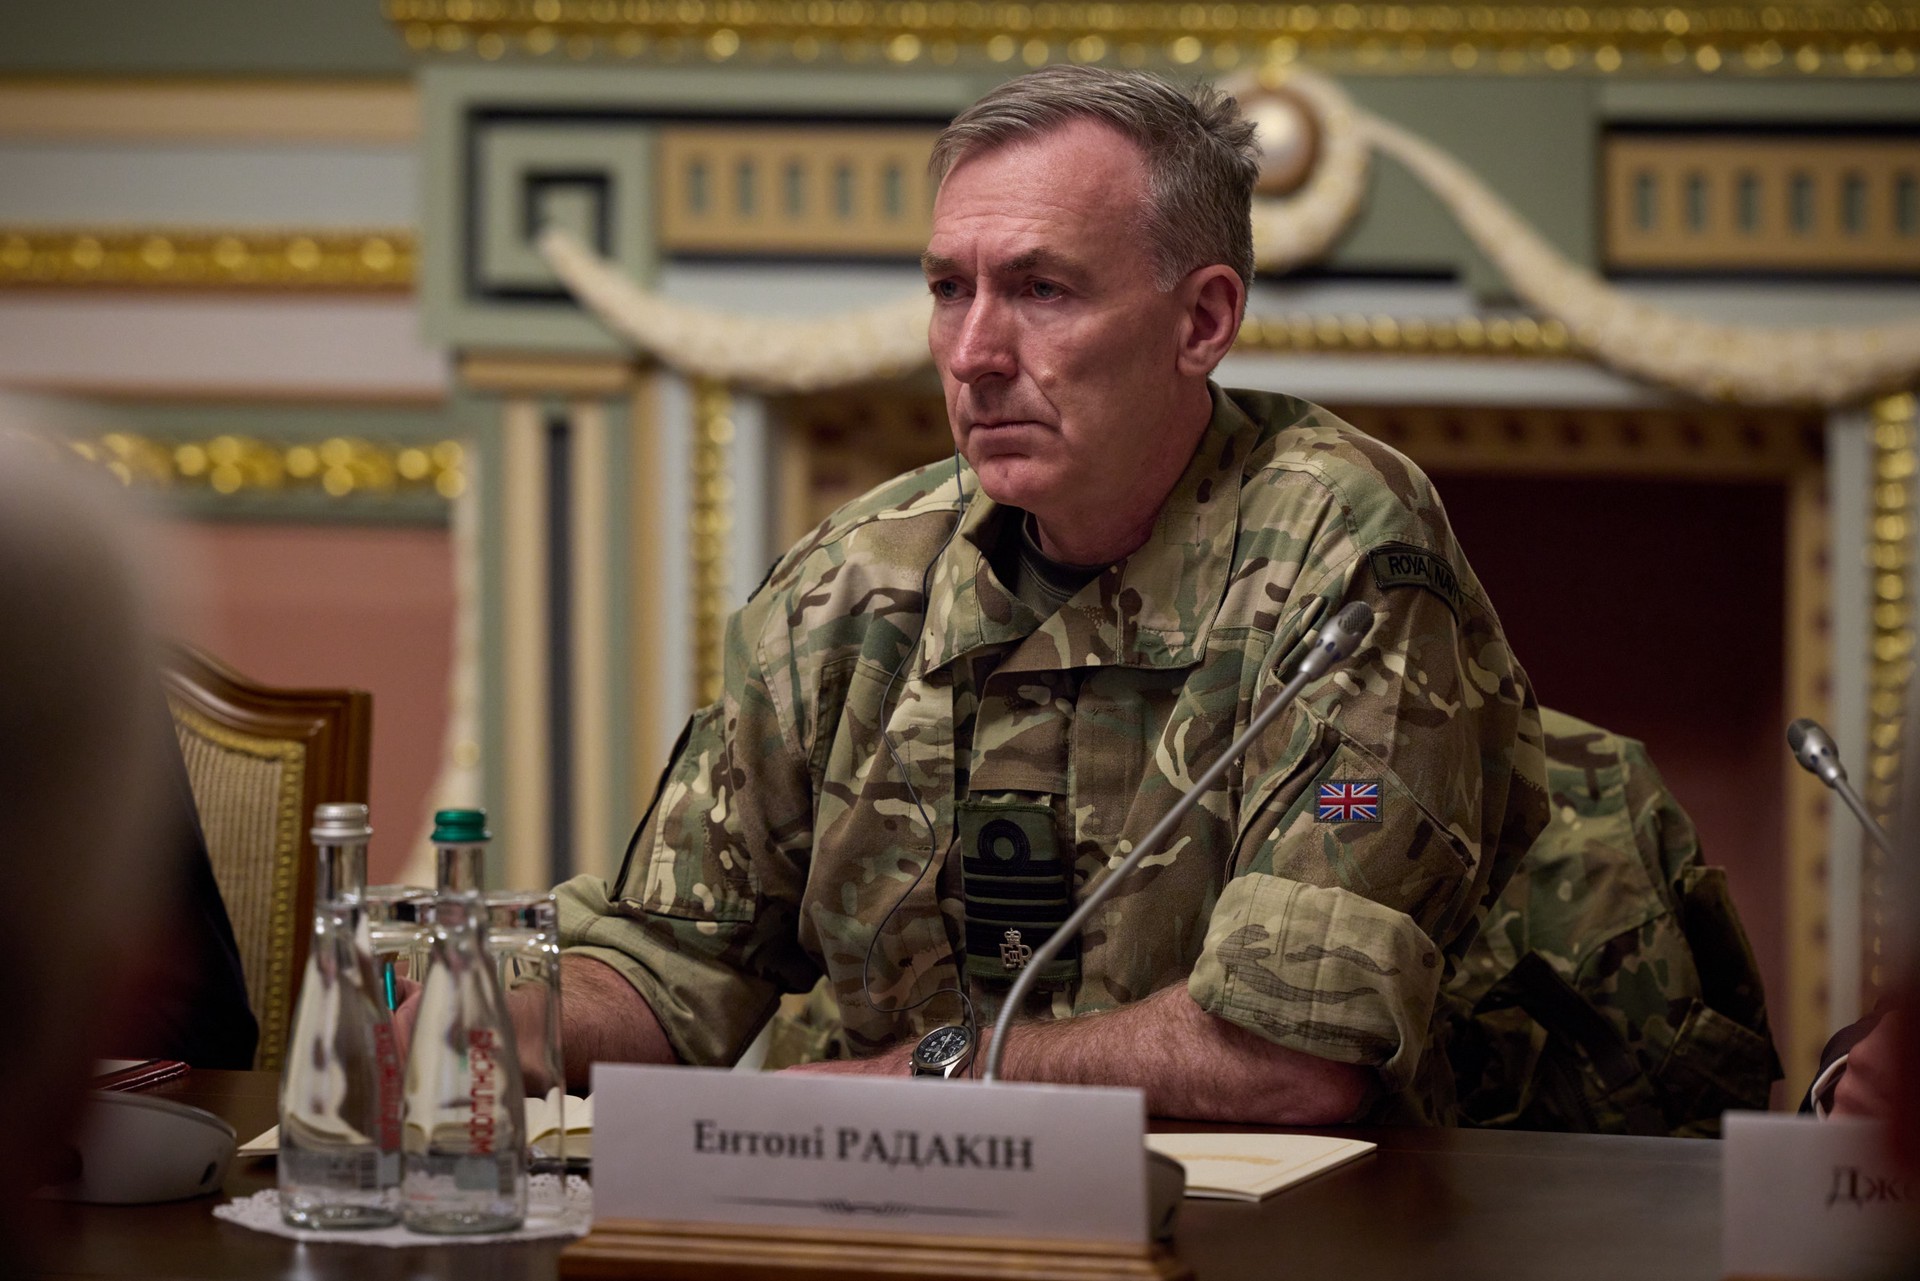 Глава генштаба Британии Радакин: силу линии обороны ВС РФ недооценили на Западе